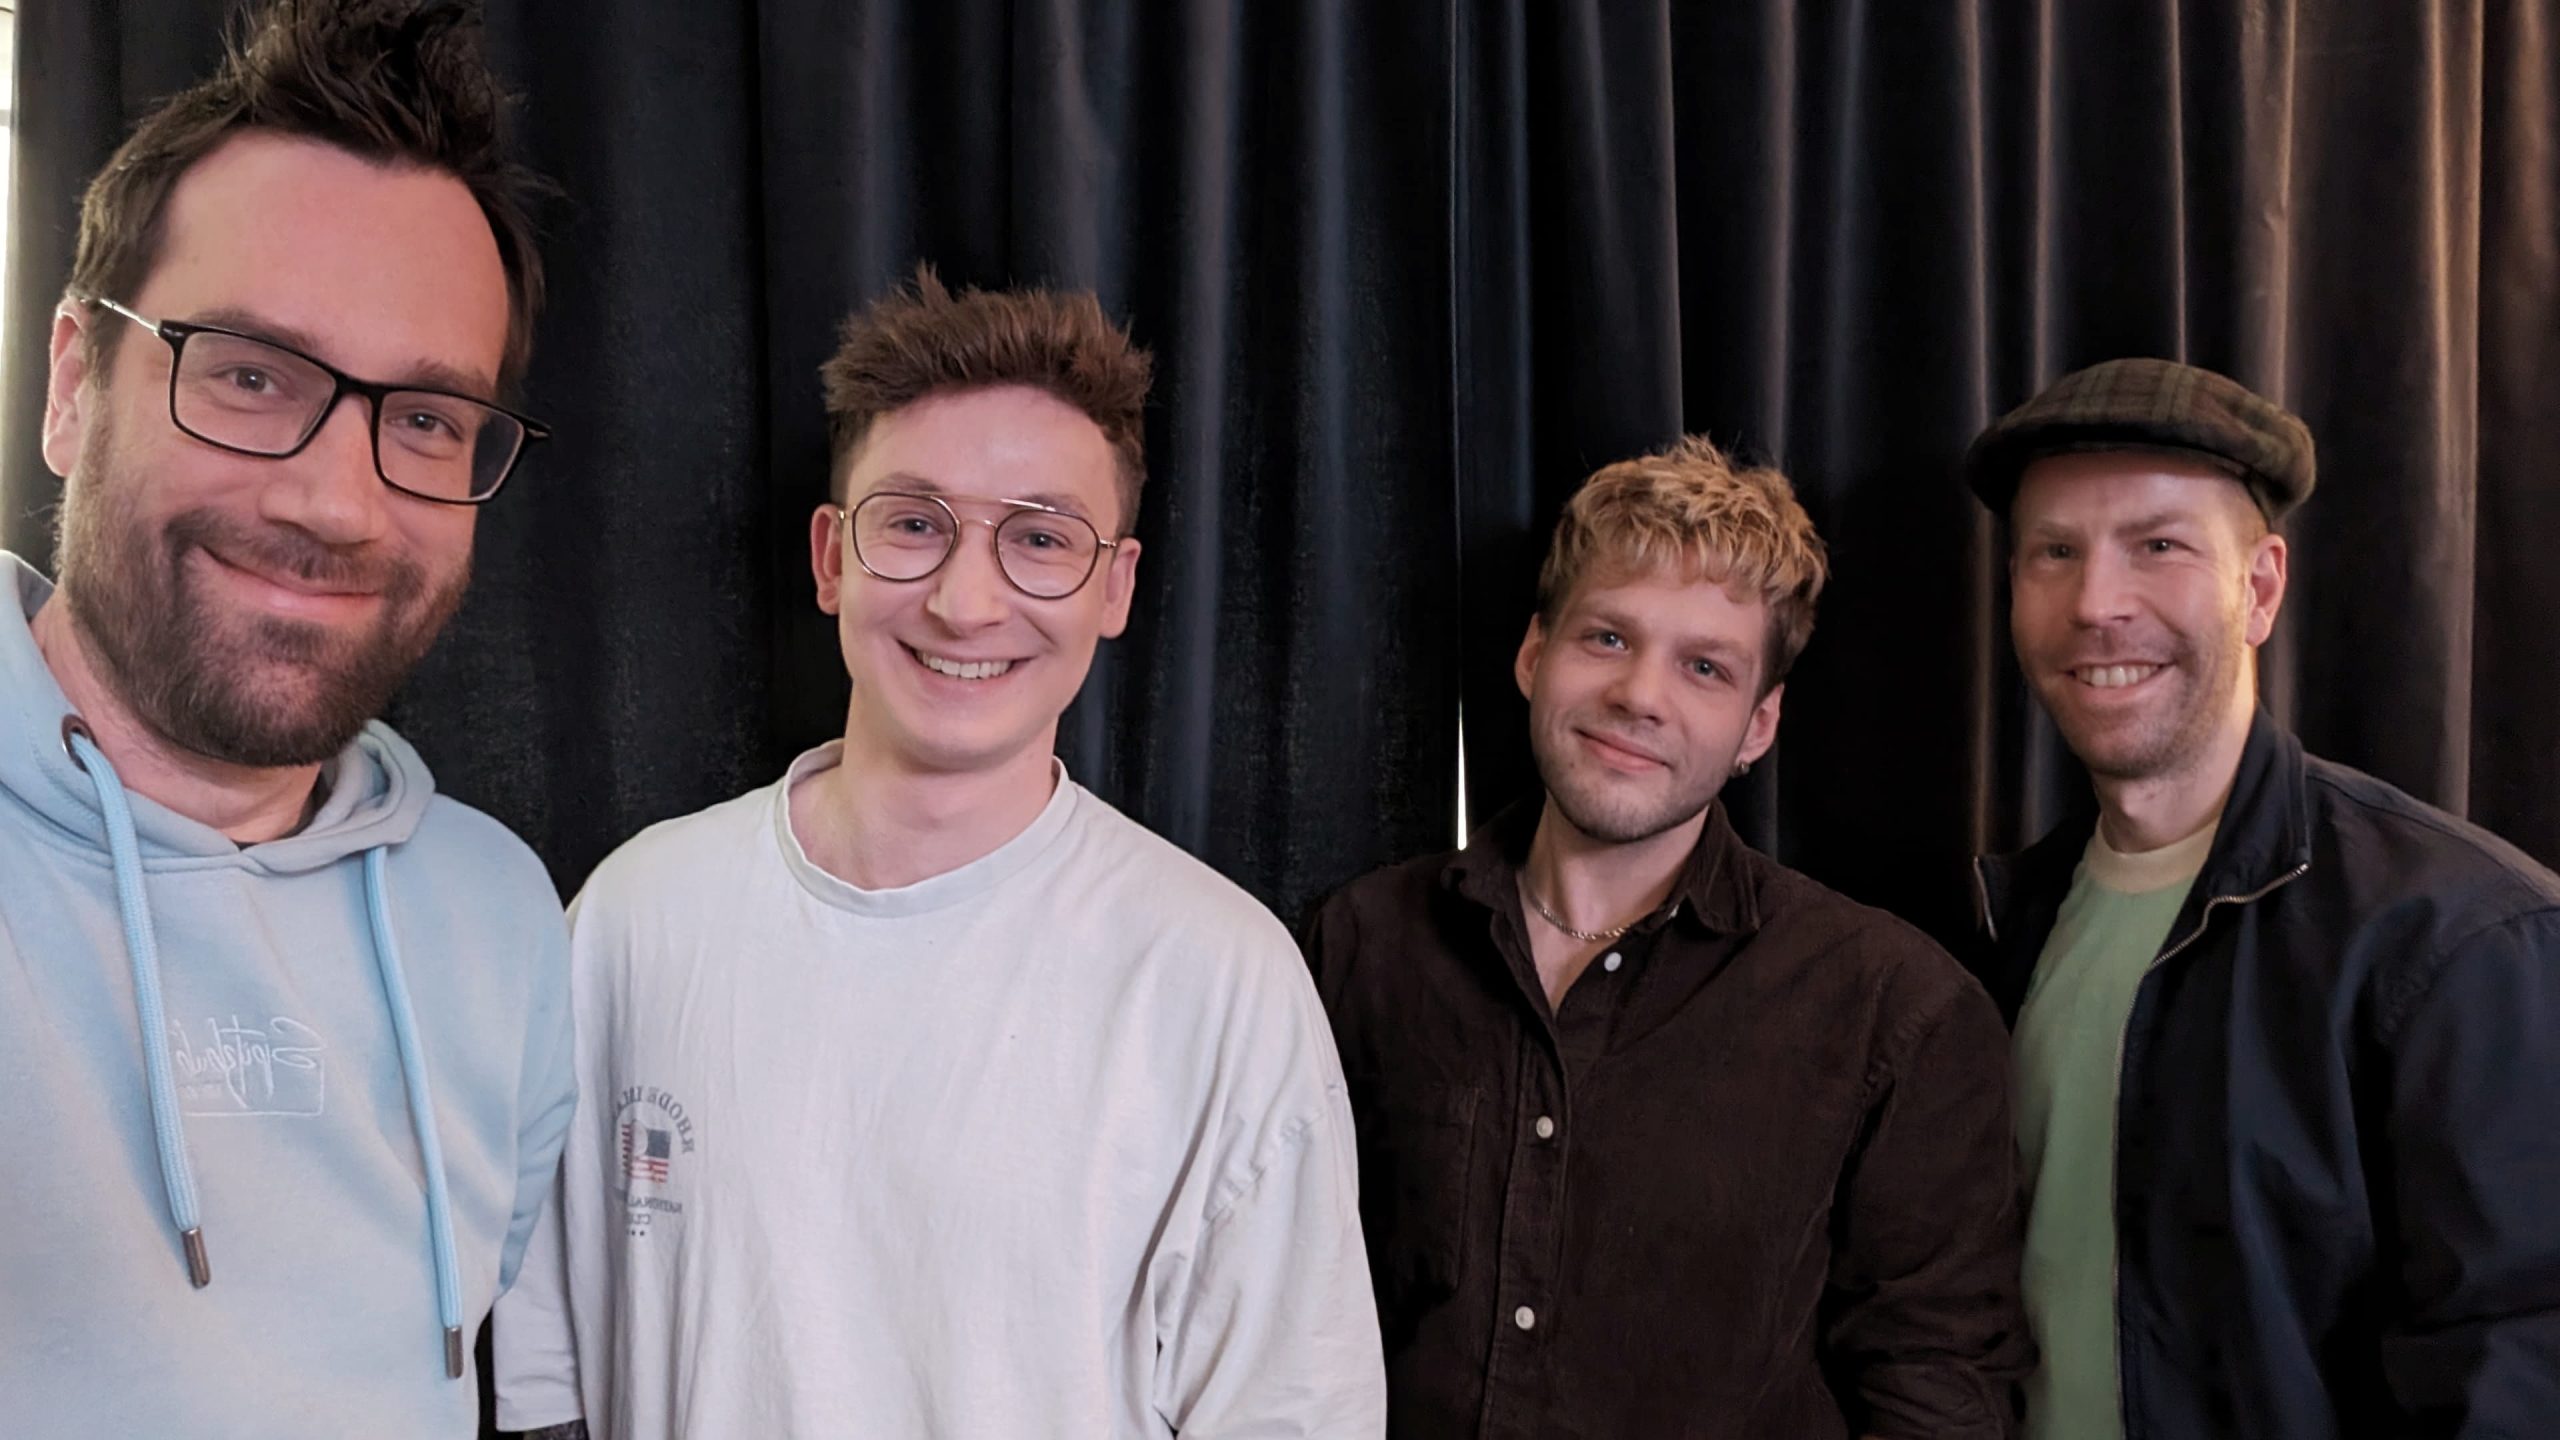 Simon Lösch und Waldemar Rusch sind die Gründer von Sparkful. In ihrem Unternehmen geht es um Diversity. Links neben den beiden steht Host Sebastian. Rechts steht Host Toni. Alle vier lächeln in die Kamera.